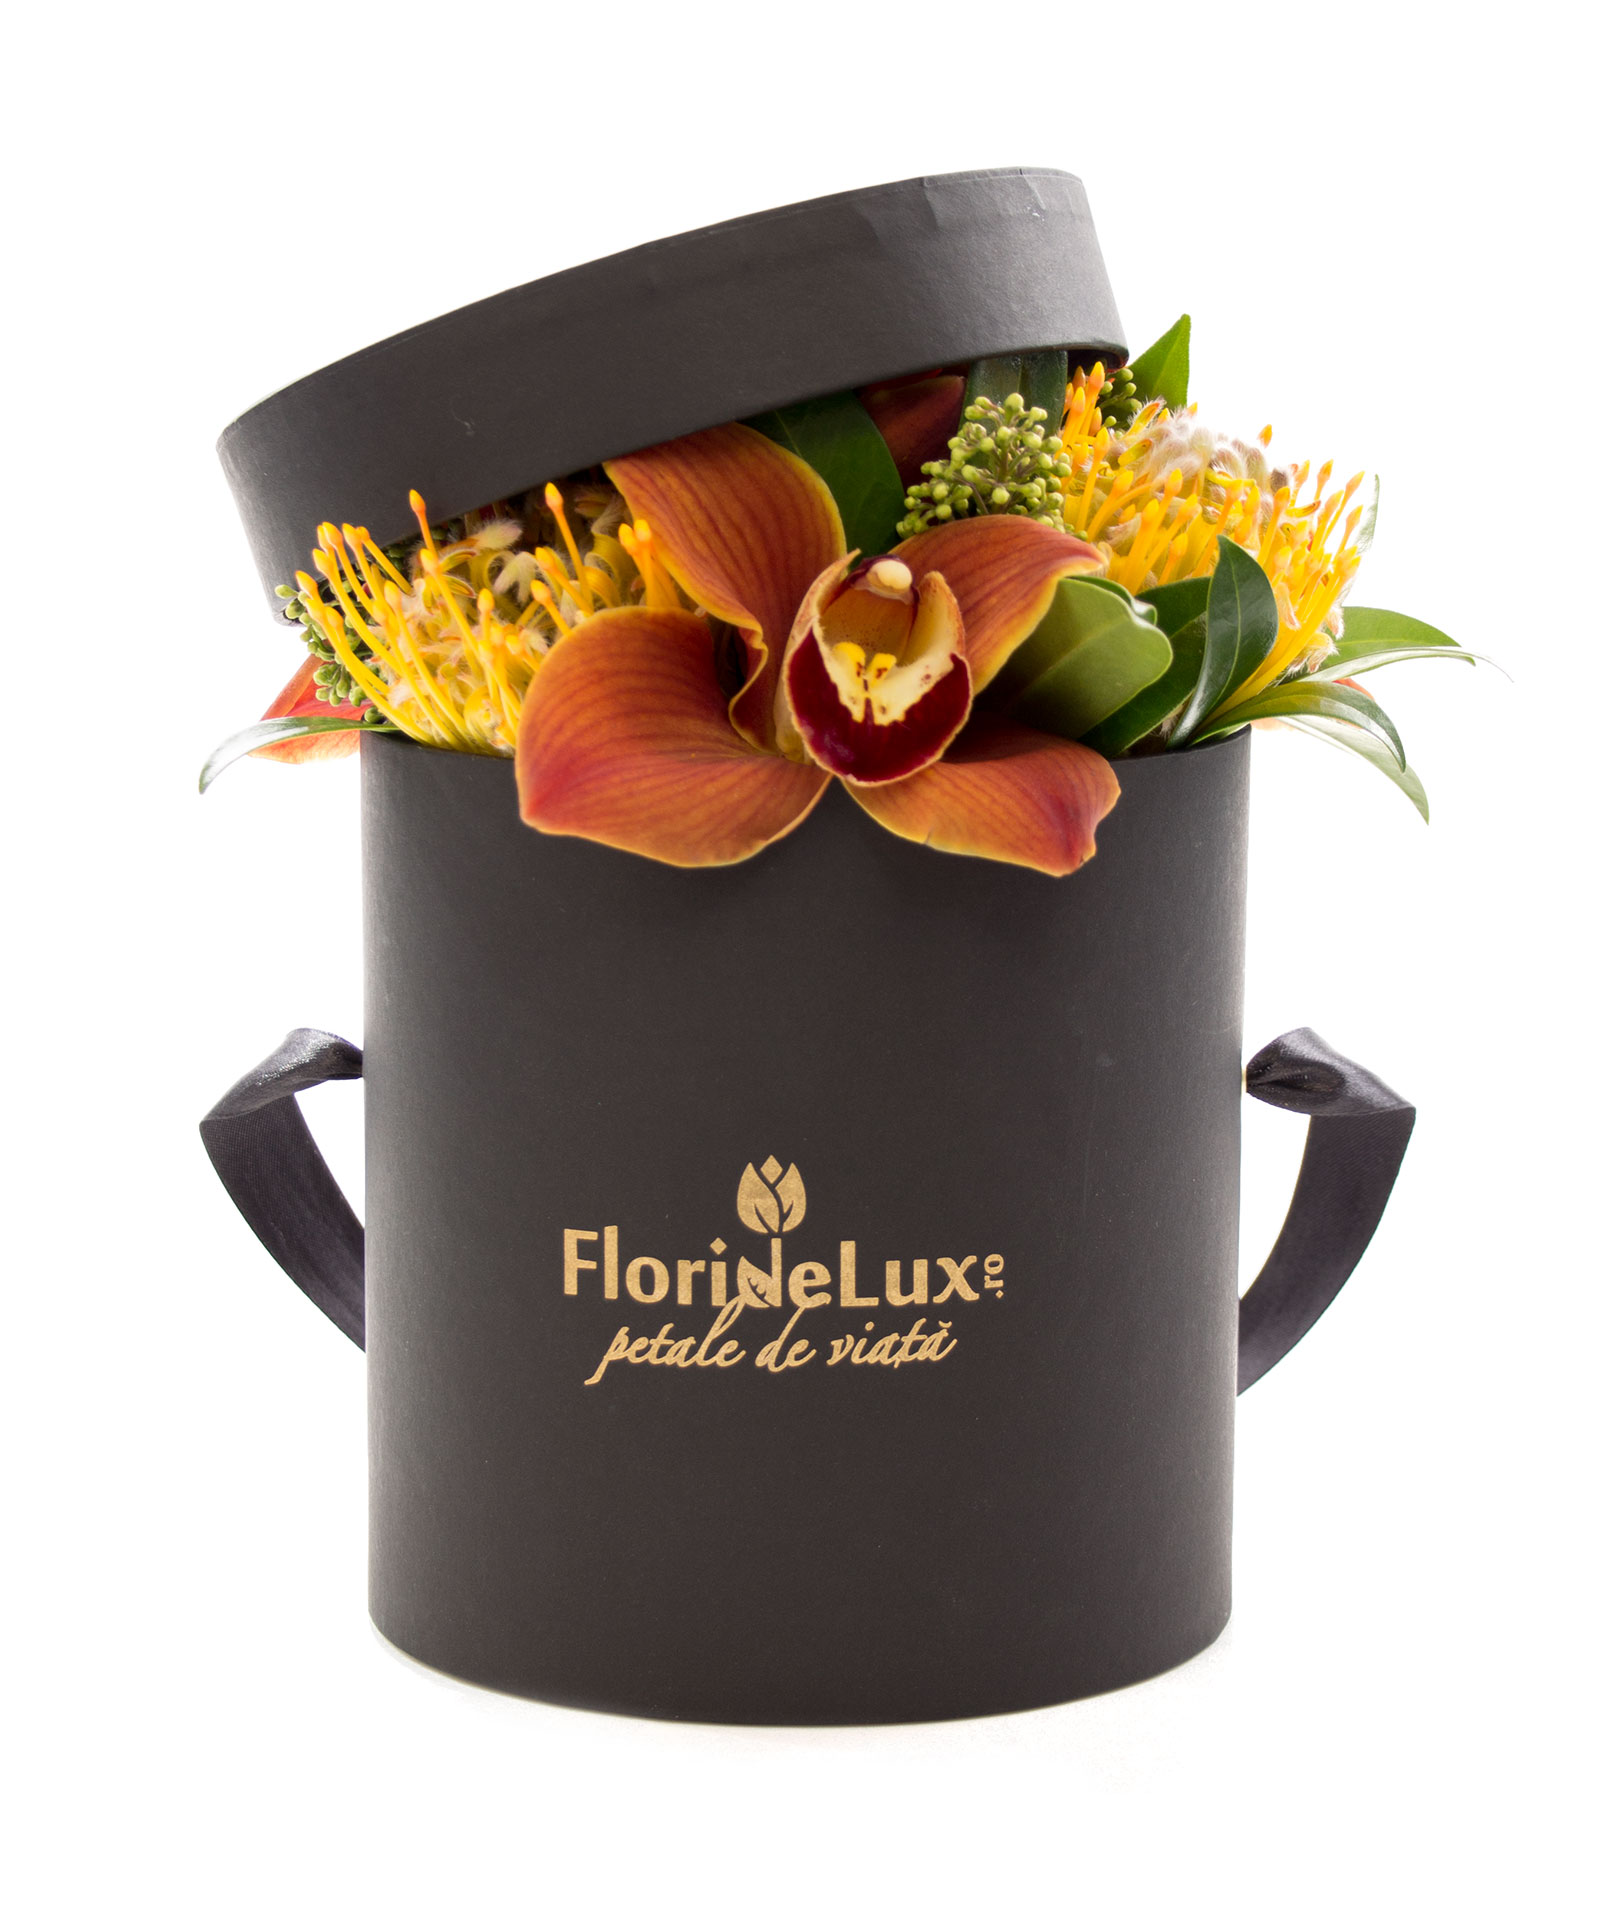 Cutie de lux cu flori exotice si Corton Charlemagne